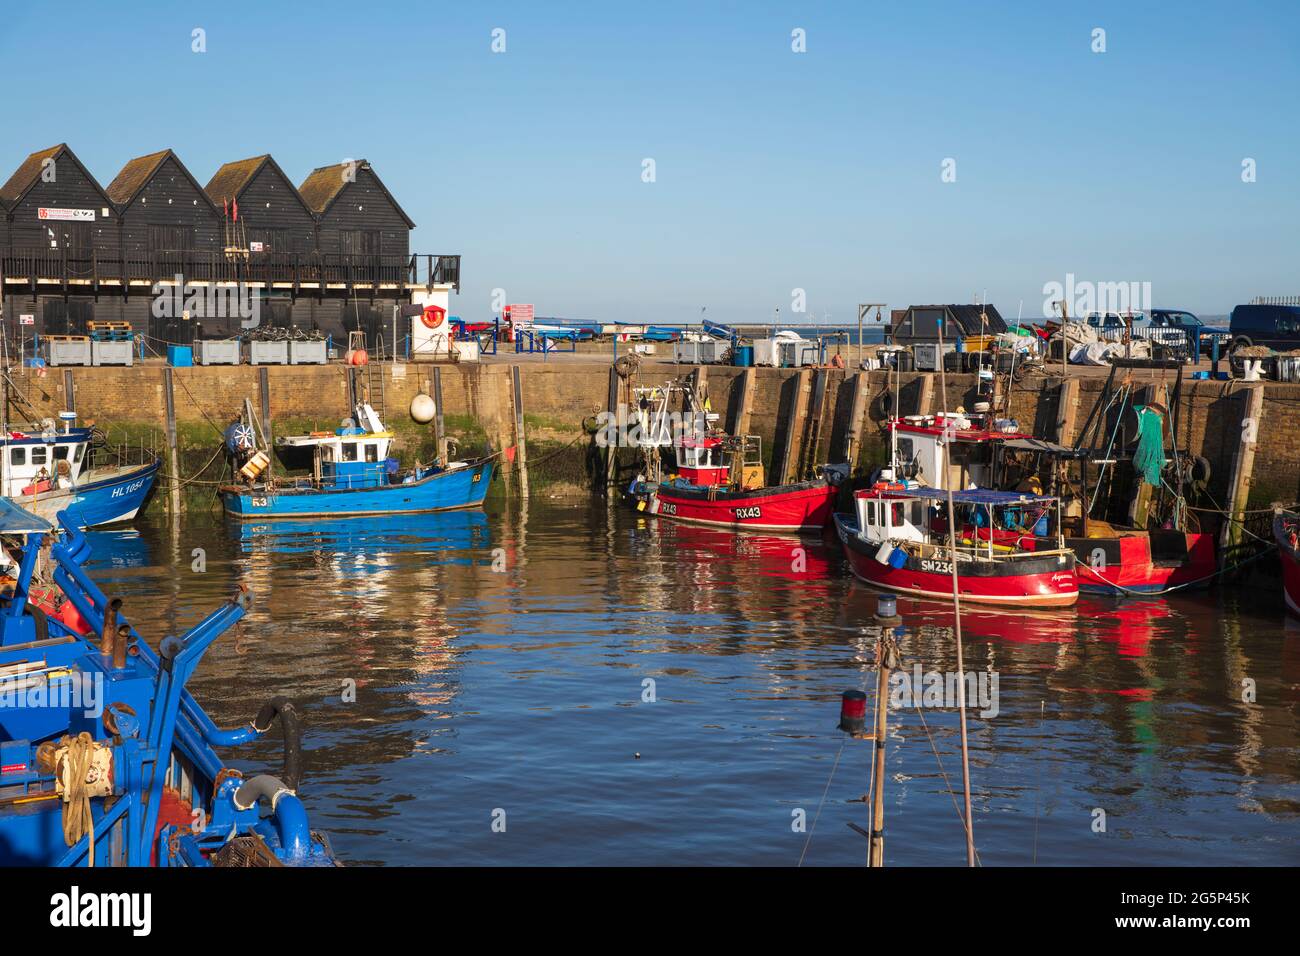 Le port de pêche, Whitstable, Kent, Angleterre, Royaume-Uni, Europe Banque D'Images